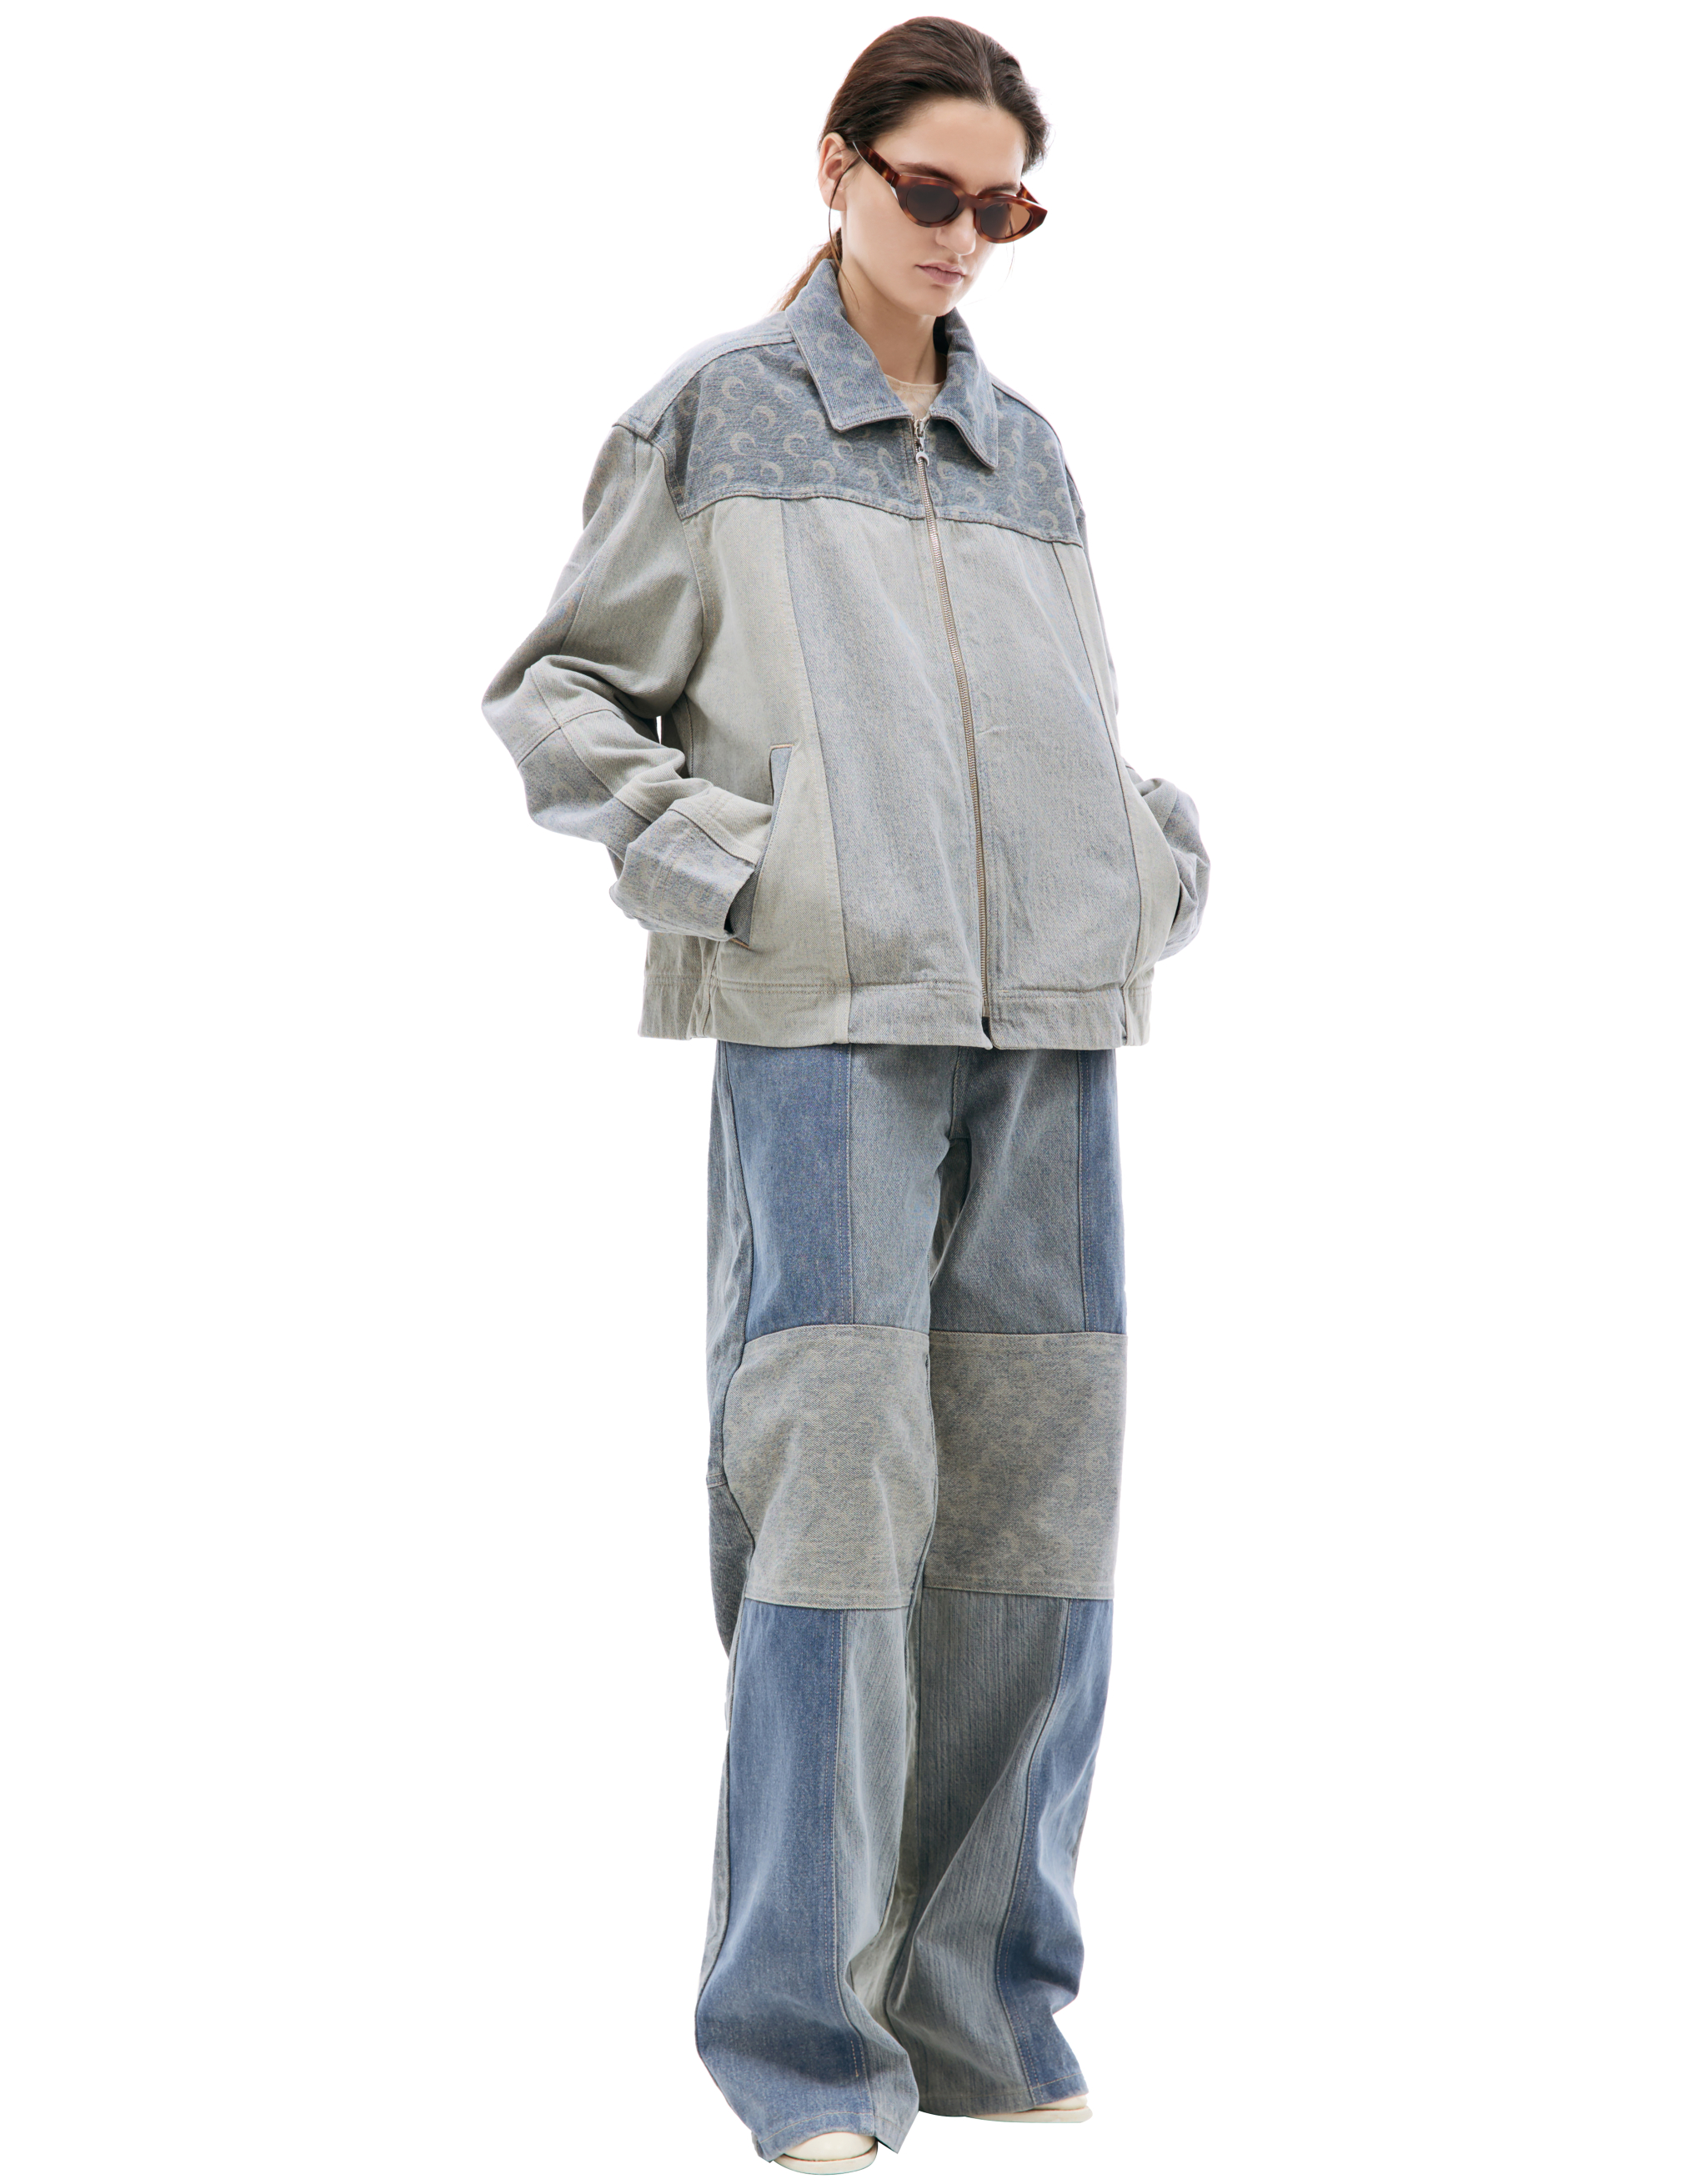 Джинсовая куртка на молнии MARINE SERRE UJA041/UDEN0002/GR30, размер L;XL